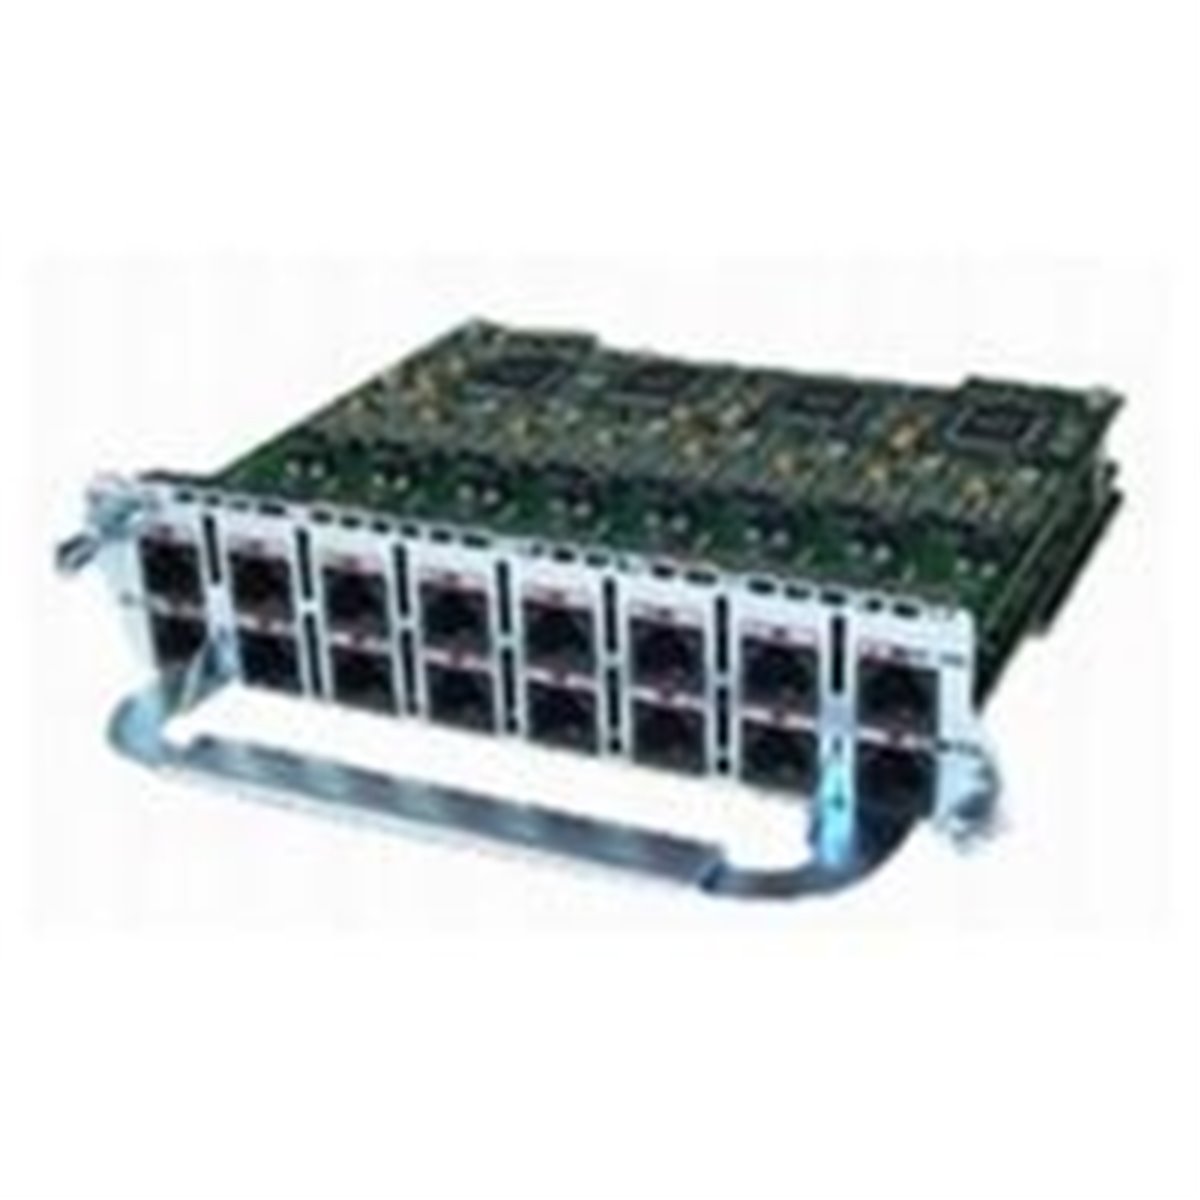 Cisco NM-16AM-V2 16-port Analog Modem Network Module with V.92